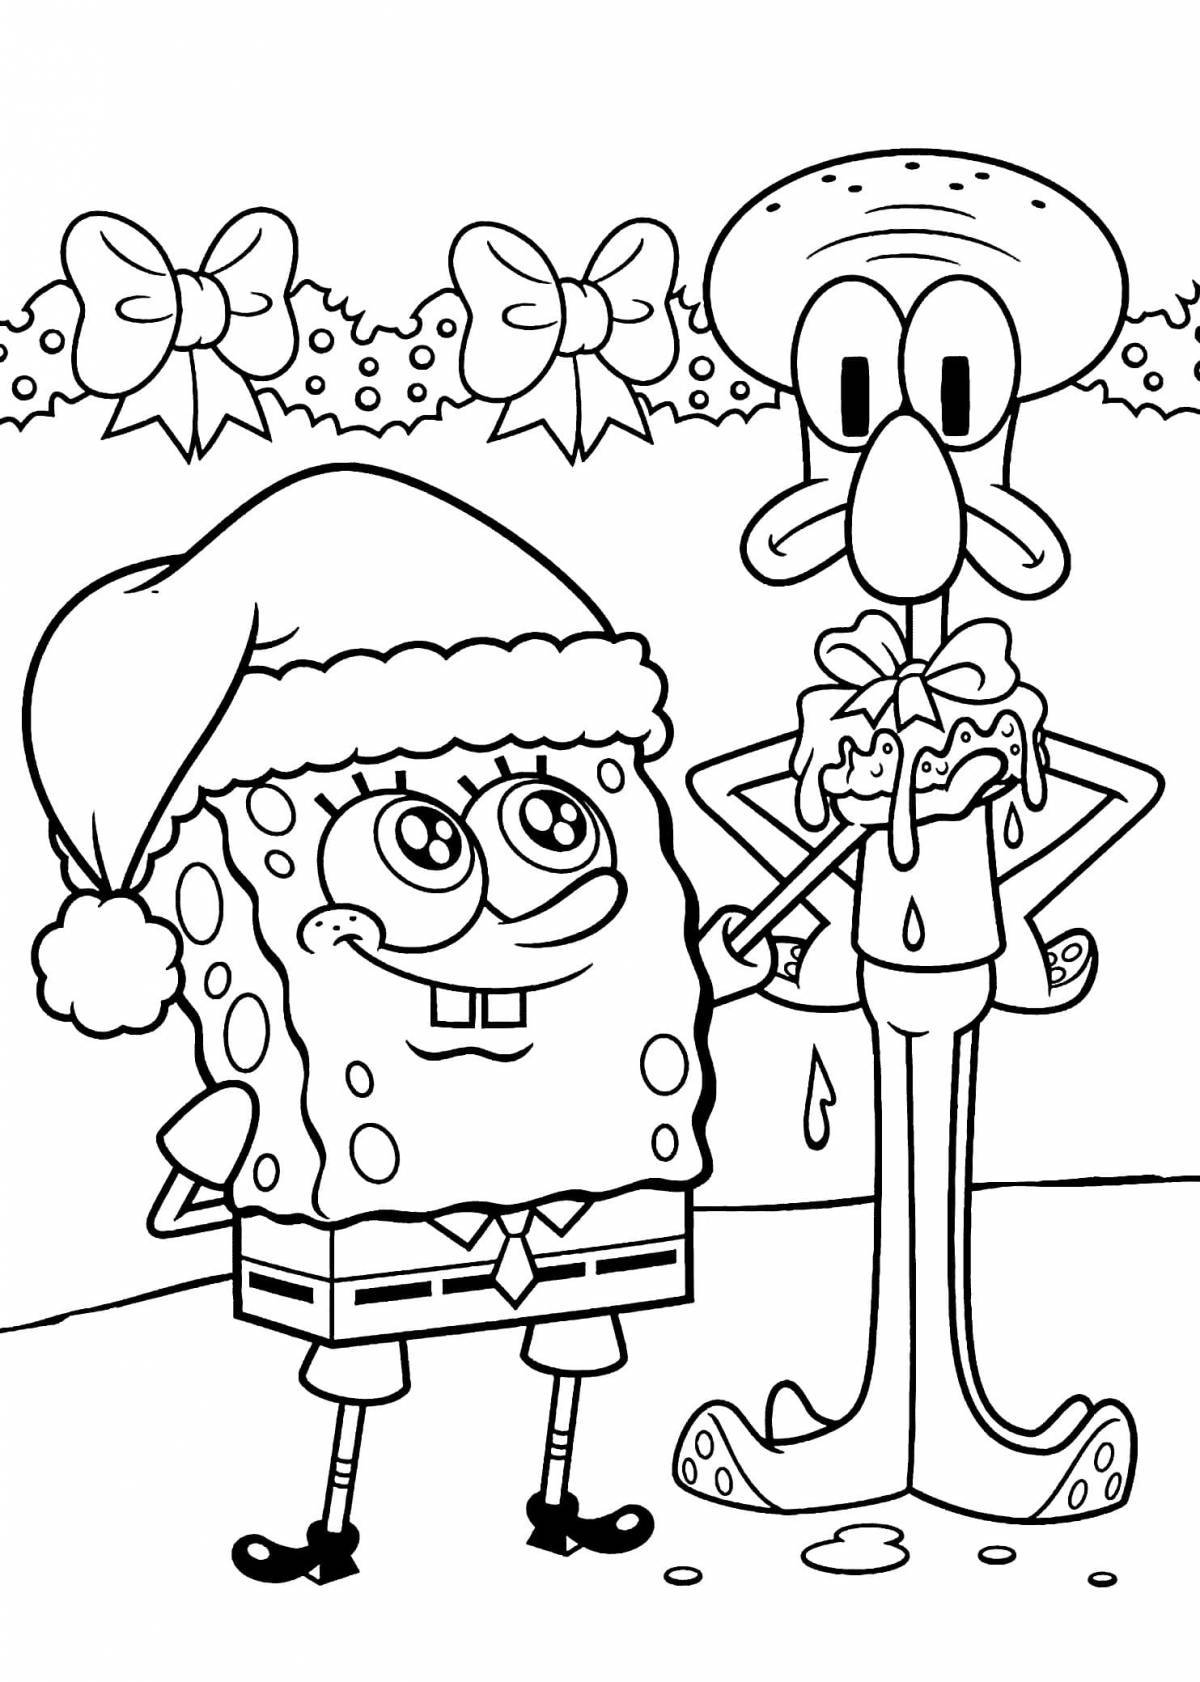 Spongebob magic coloring book for kids